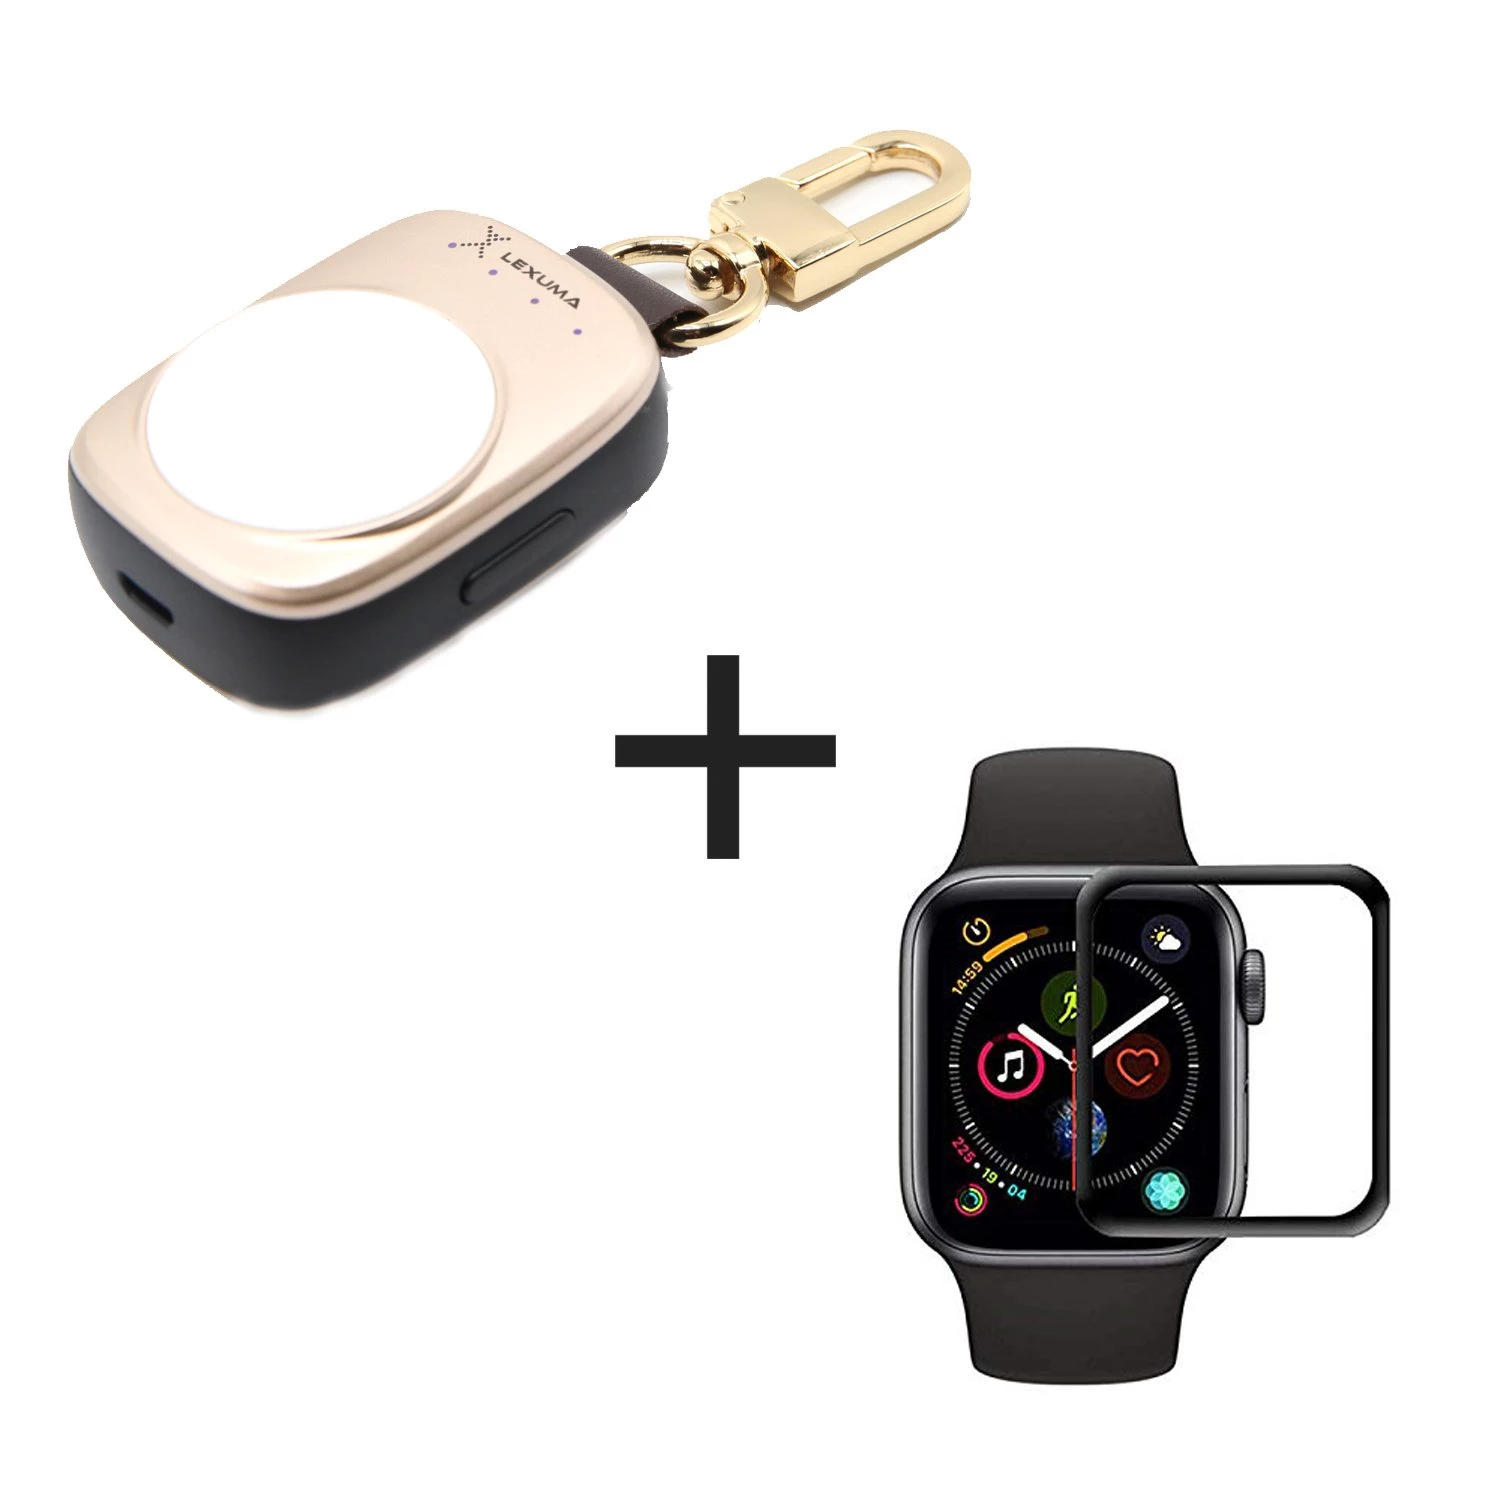 COPY Black Apple Smart Watch, 51G